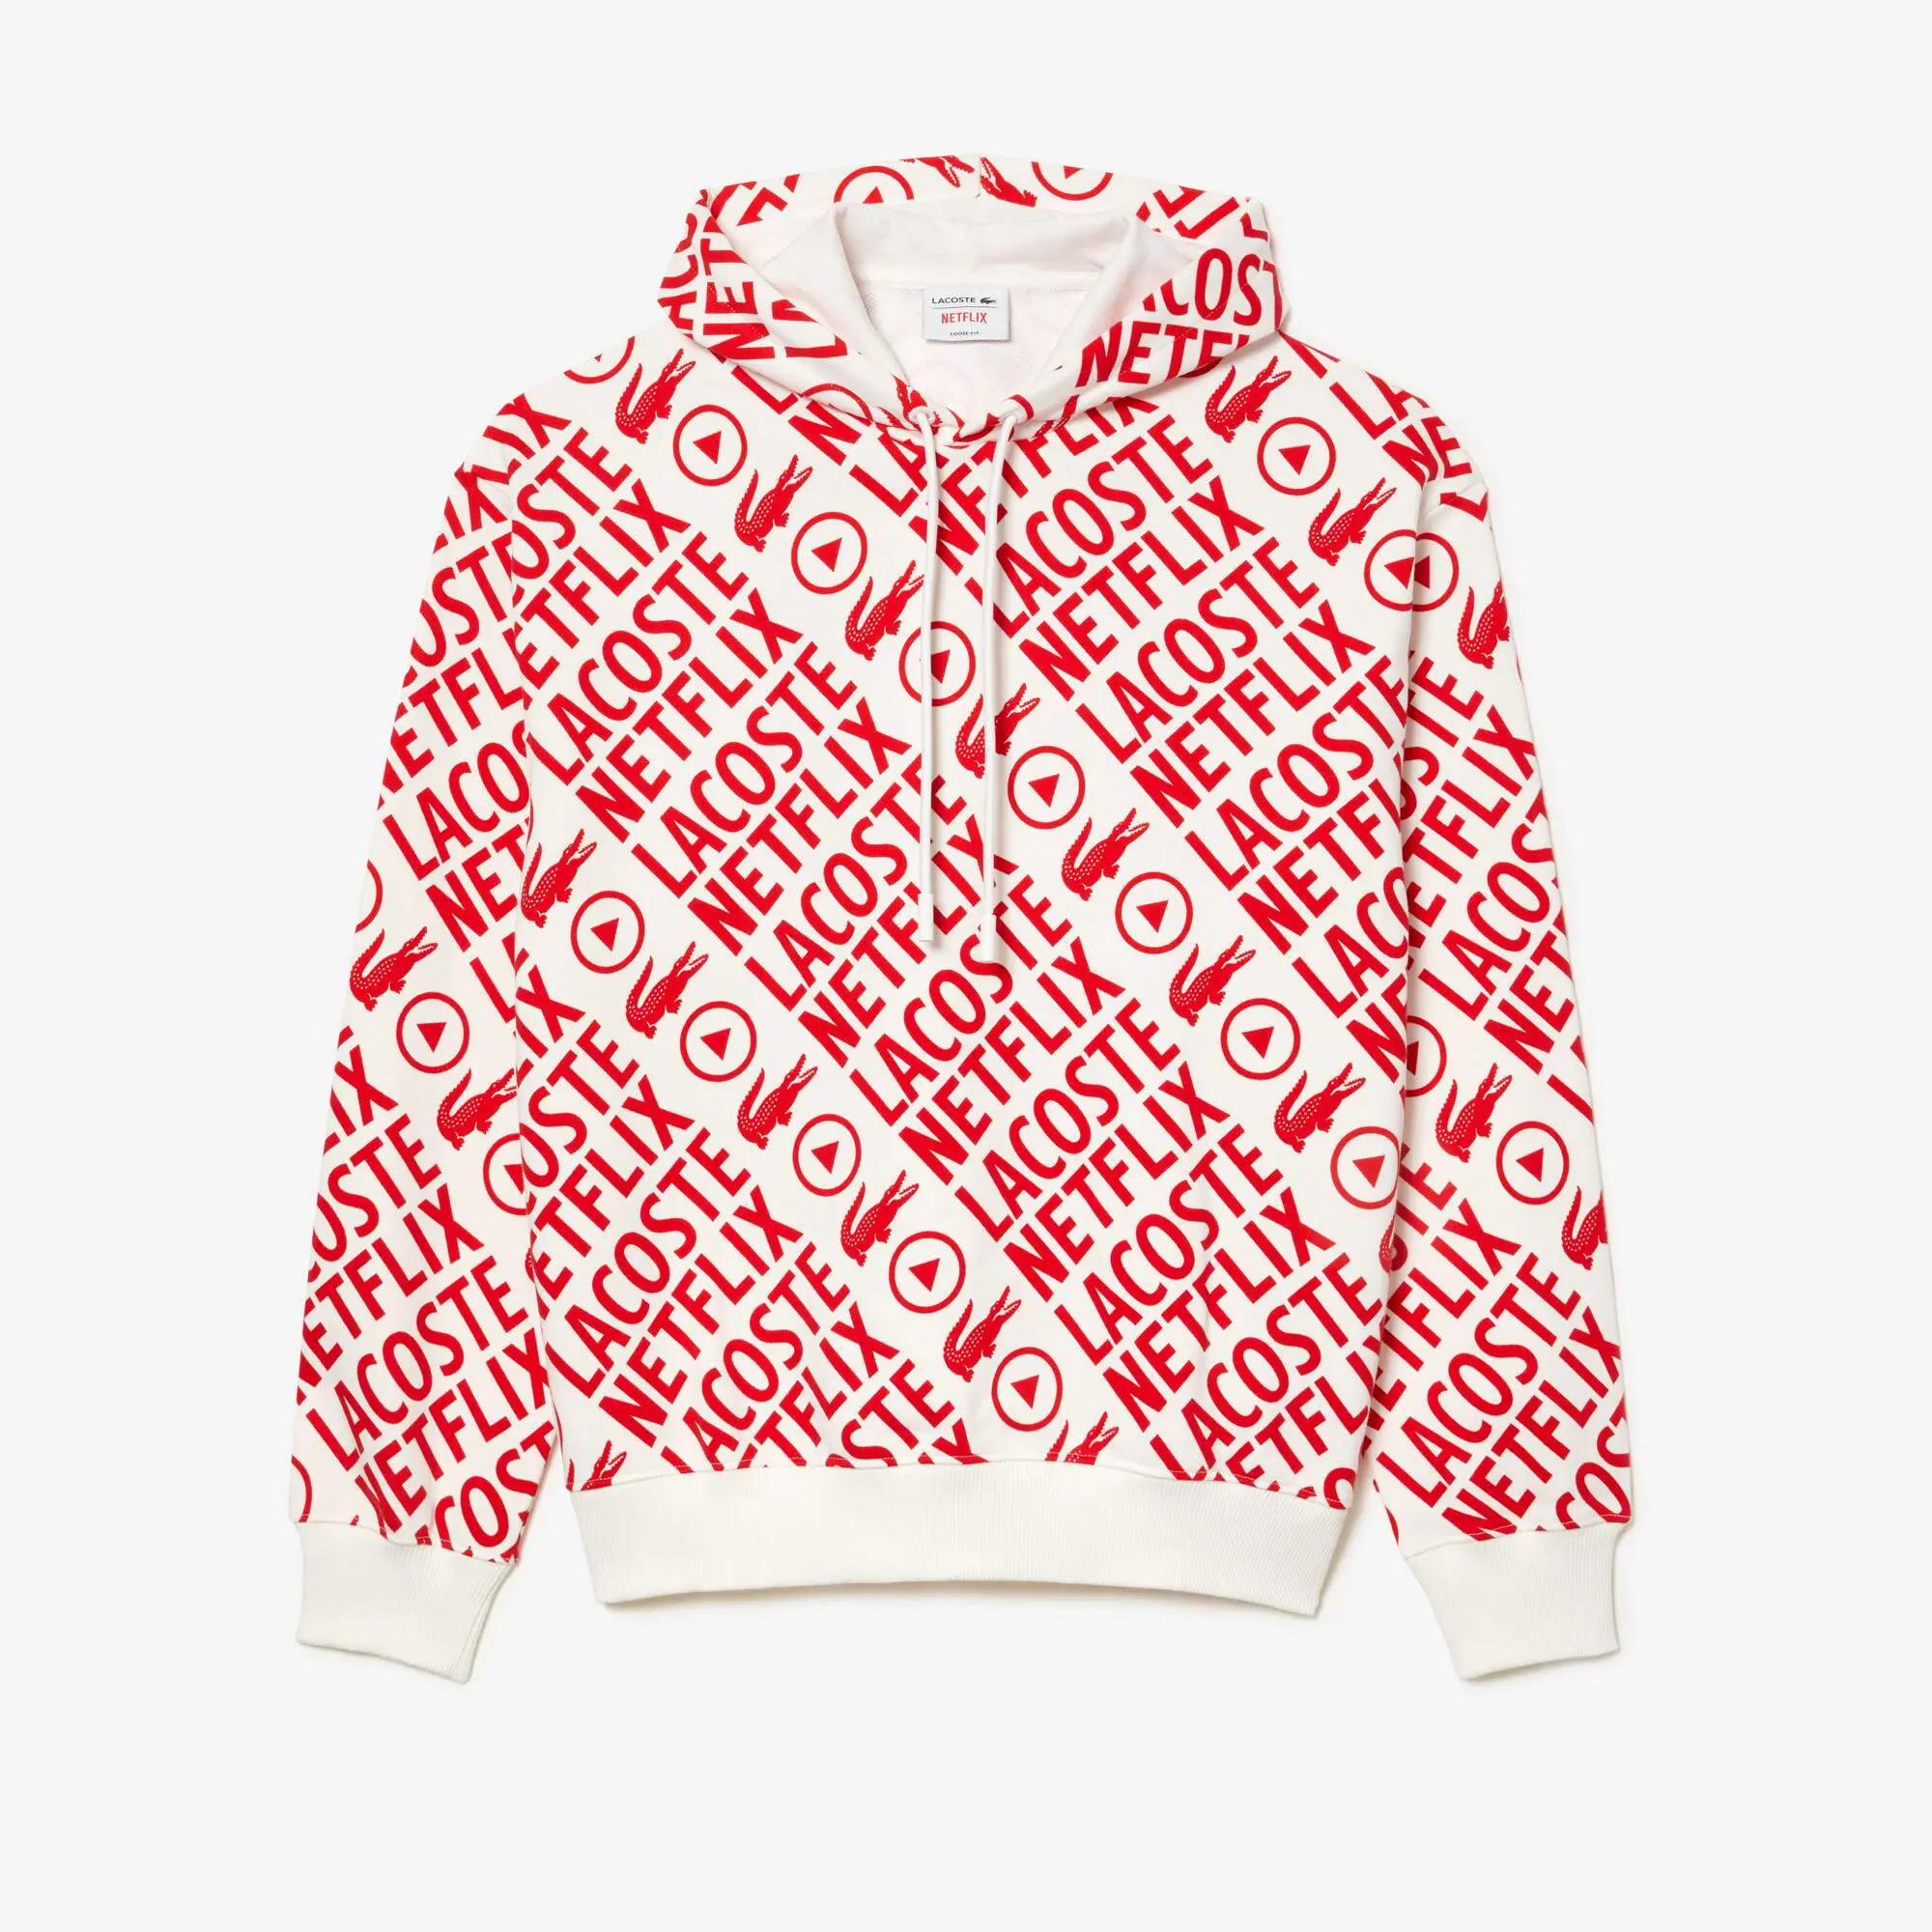 Lacoste Men’s Lacoste x Netflix Loose Fit Organic Cotton Sweatshirt. 2